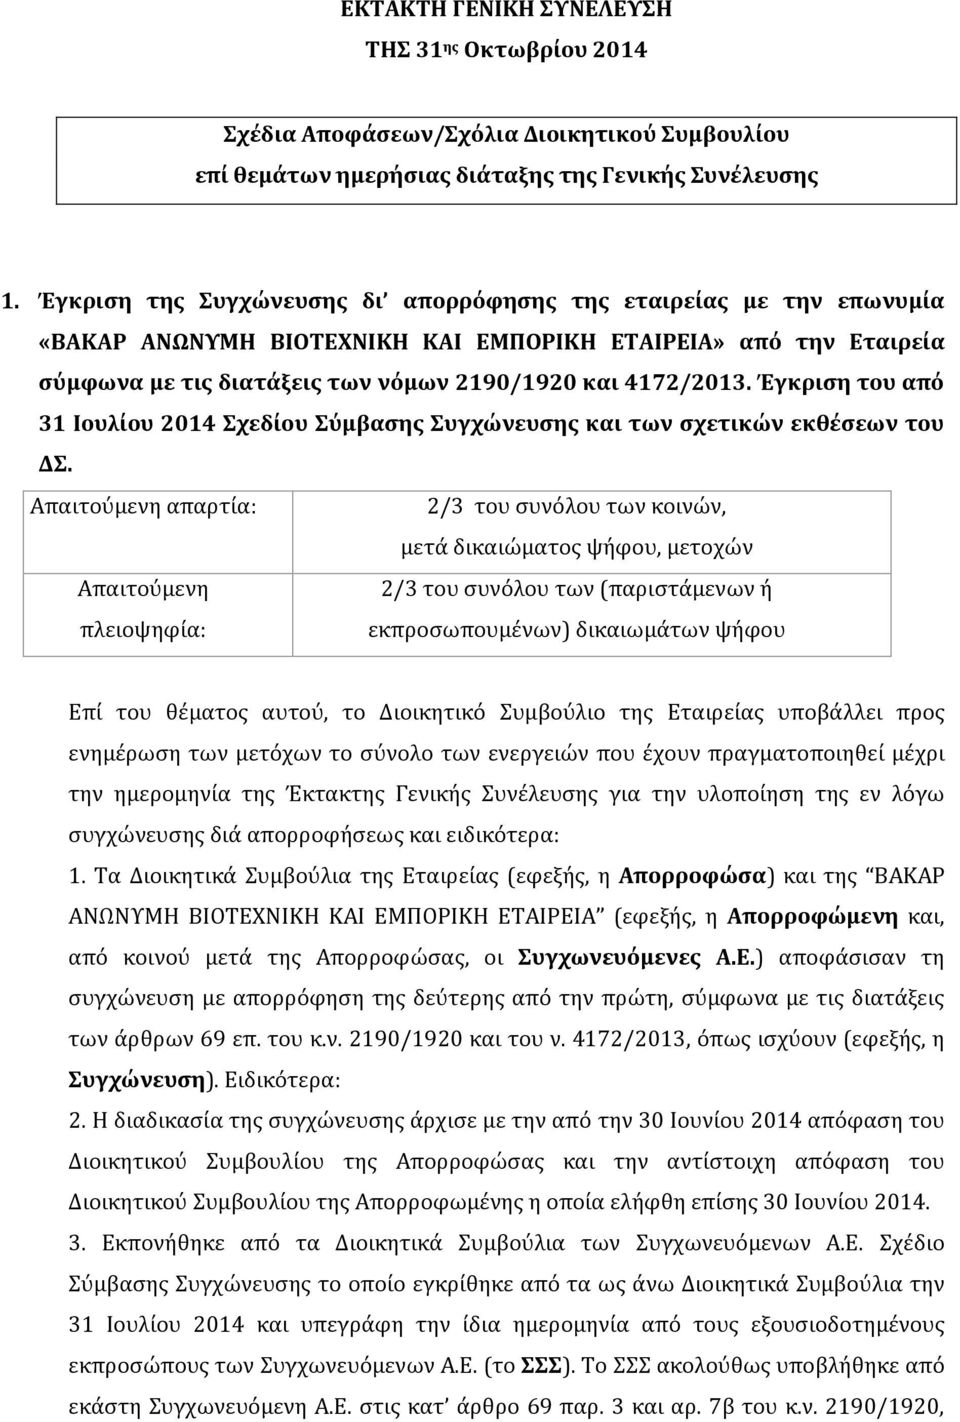 Έγκριση του από 31 Ιουλίου 2014 Σχεδίου Σύμβασης Συγχώνευσης και των σχετικών εκθέσεων του ΔΣ.